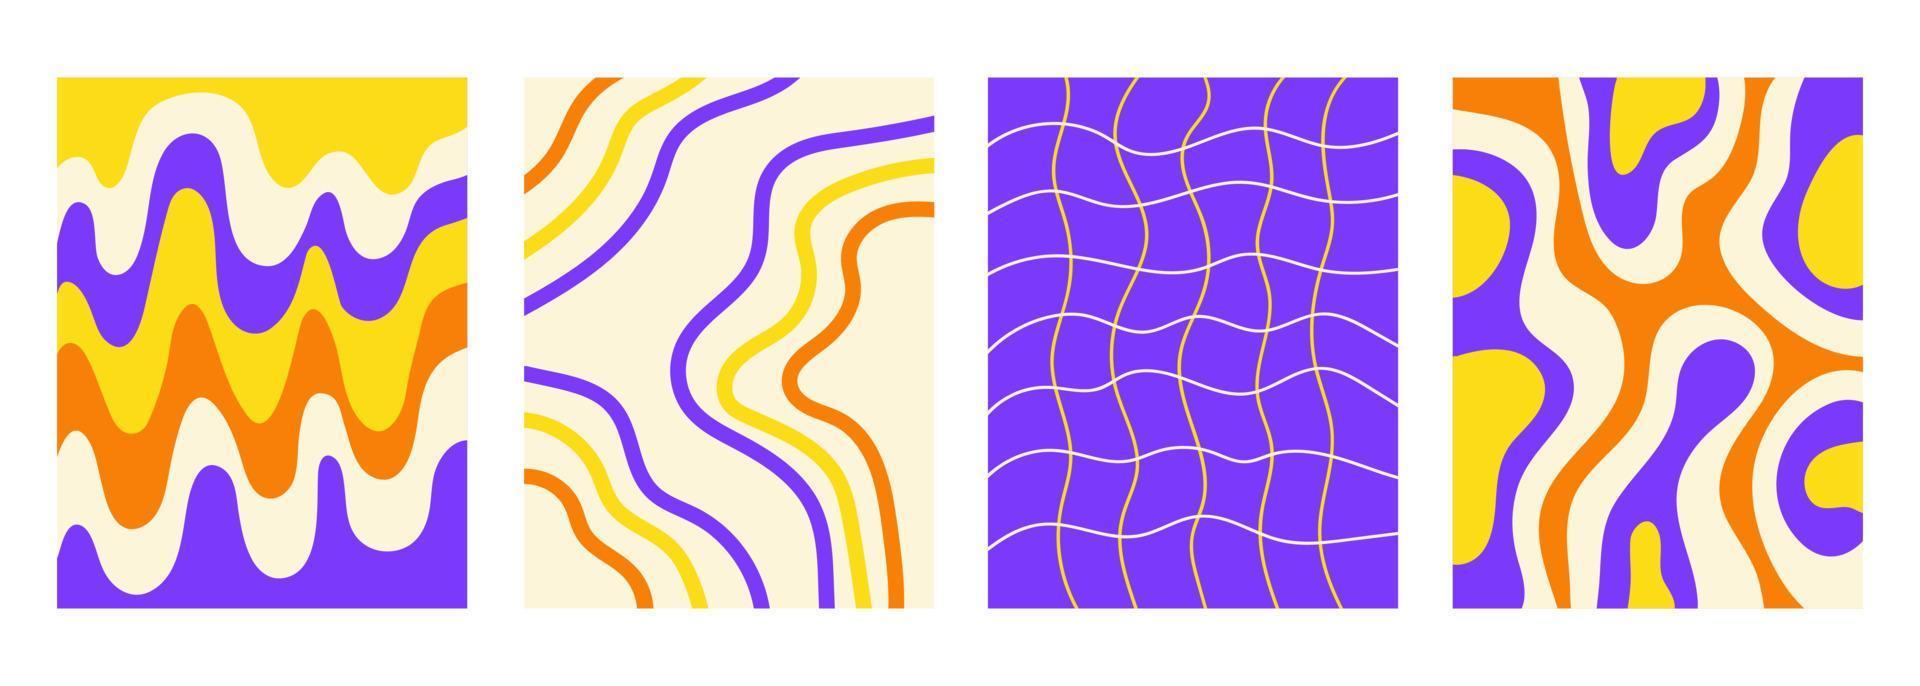 conjunto retro fondos verticales abstractos ondulados en estilo hippie 60s, 70s. colección de moda maravillosas plantillas distorsionadas a cuadros y ondas. colores amarillo, naranja y violeta. ilustración vectorial vector